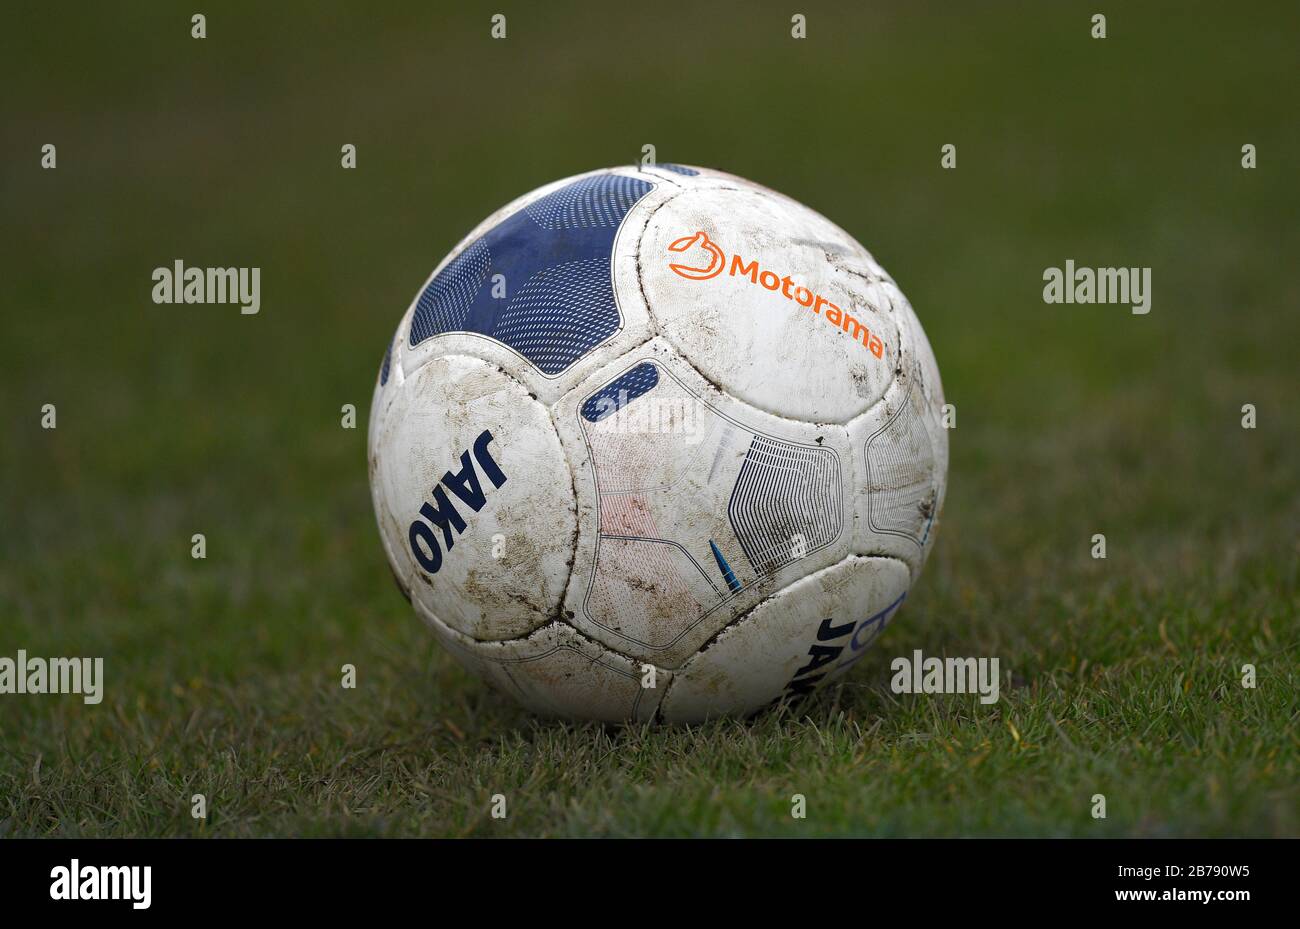 Vue générale d'une balle de match Jako pendant le match nord de la Ligue nationale de Vanarama au stade Horsfall, Bradford. Banque D'Images